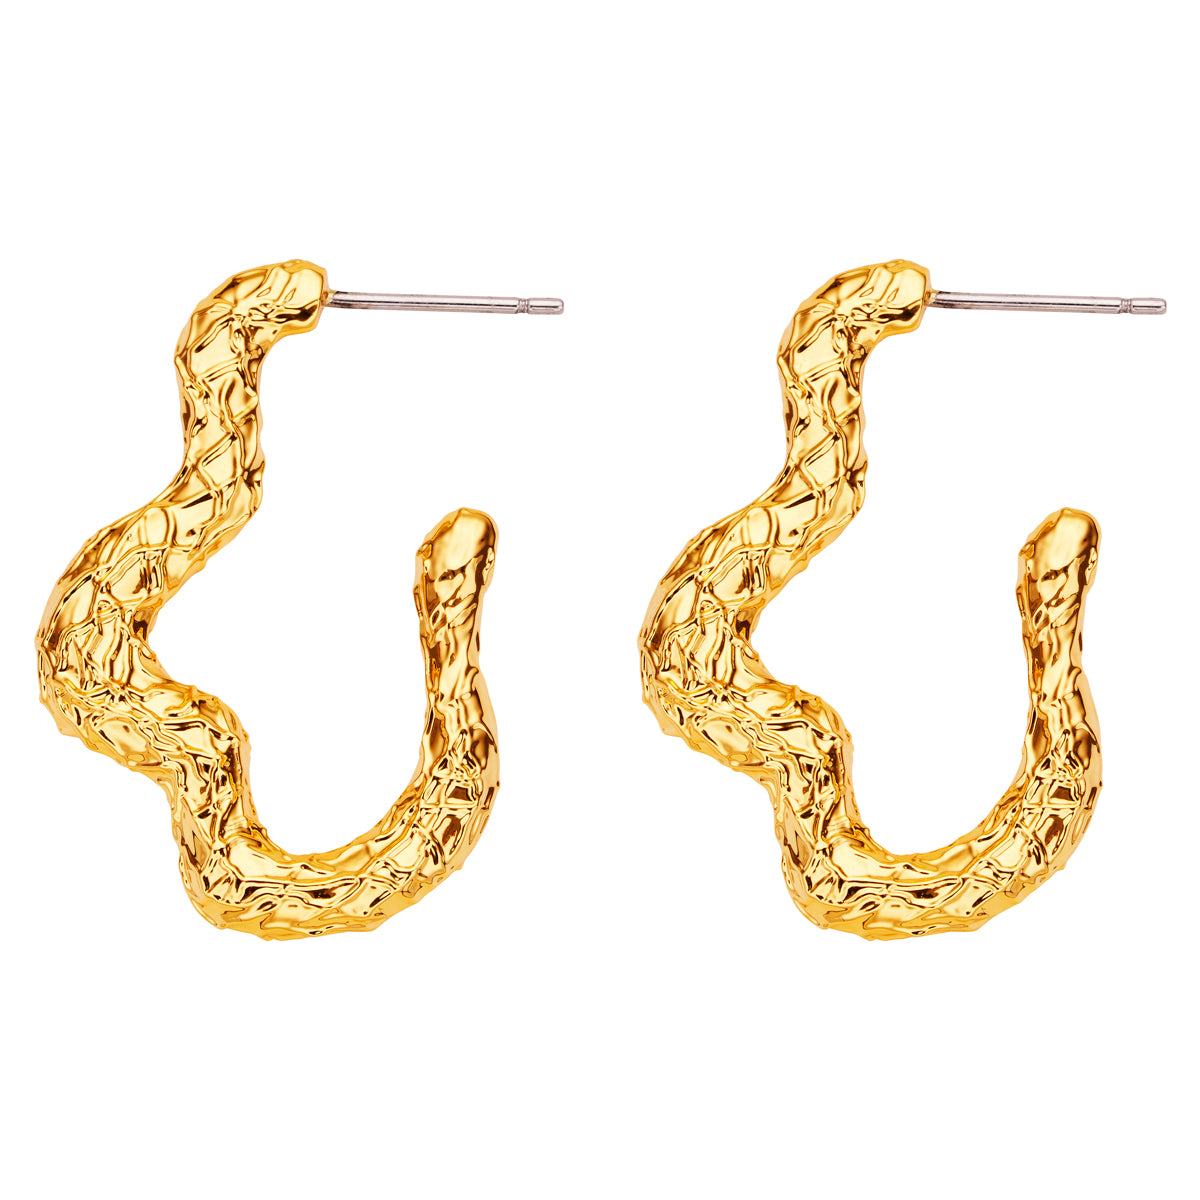 Russo-earrings-Amber-Sceats.jpg